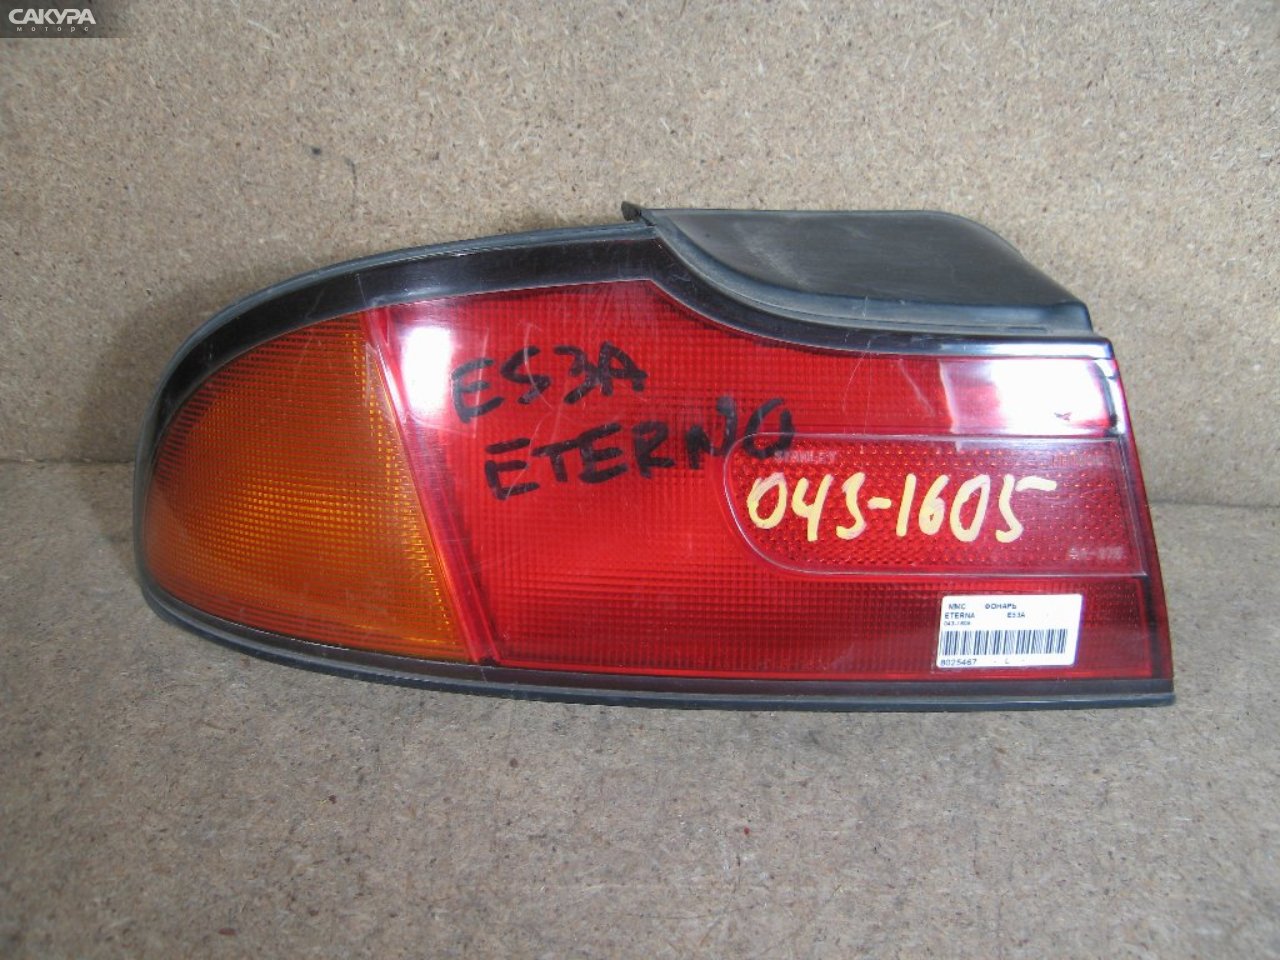 Фонарь стоп-сигнала левый Mitsubishi Eterna E53A 043-1605: купить в Сакура Абакан.